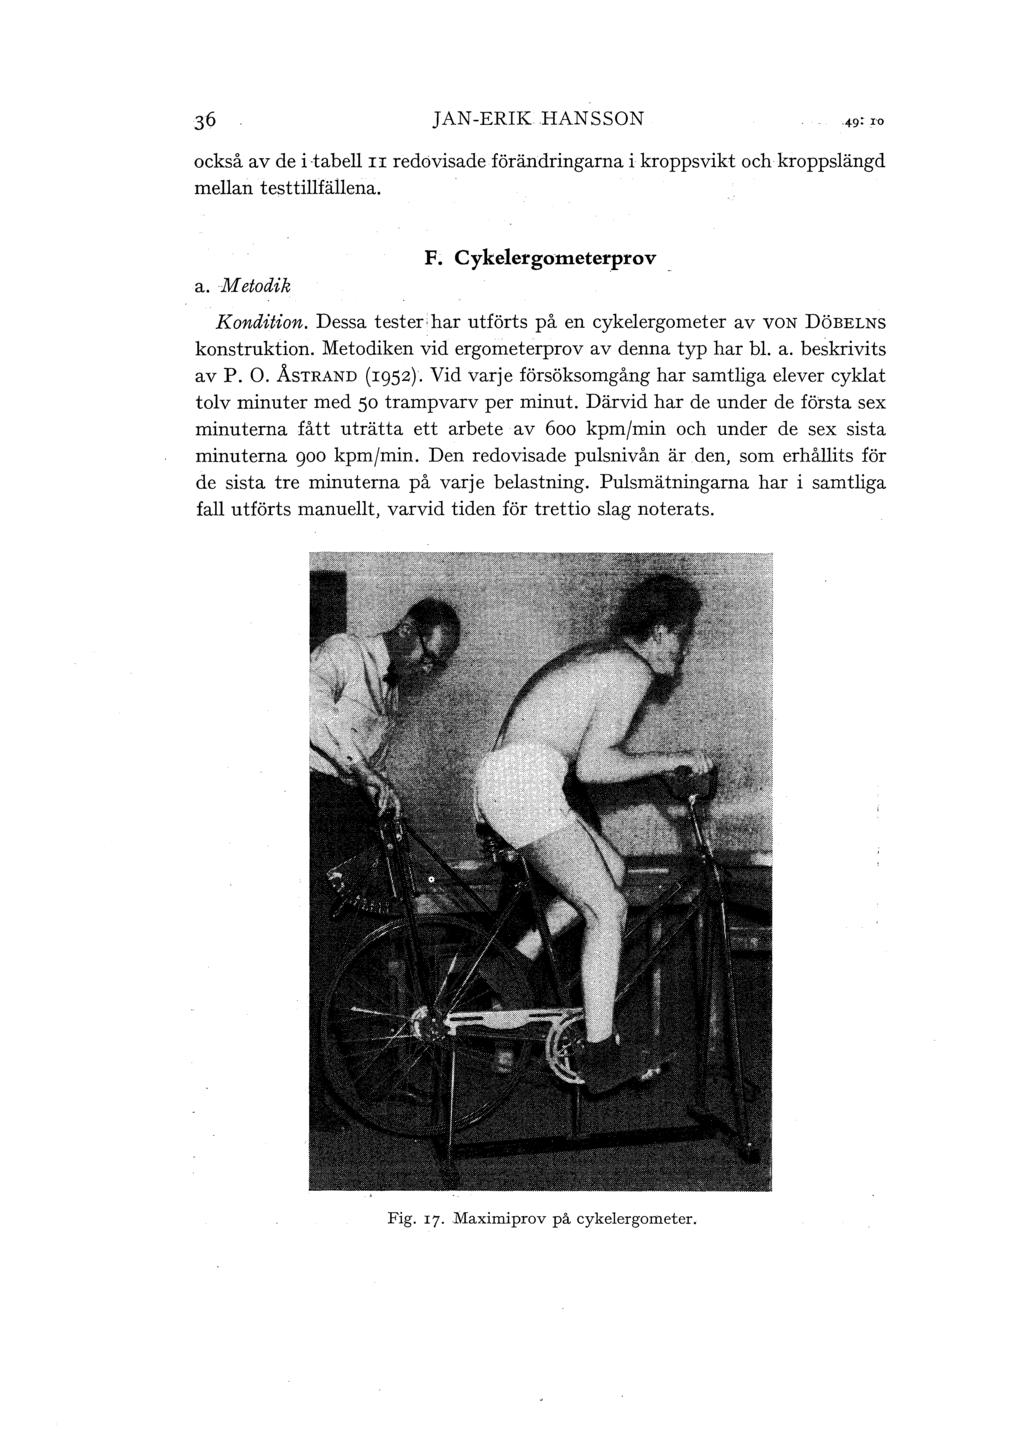 JAN-ERIK HANSSON också av de i tabe II redovisade förändringarna i kroppsvikt och kroppsängd mean testtifäena. a. Metodik F; Cykeergometerprov Kondition.